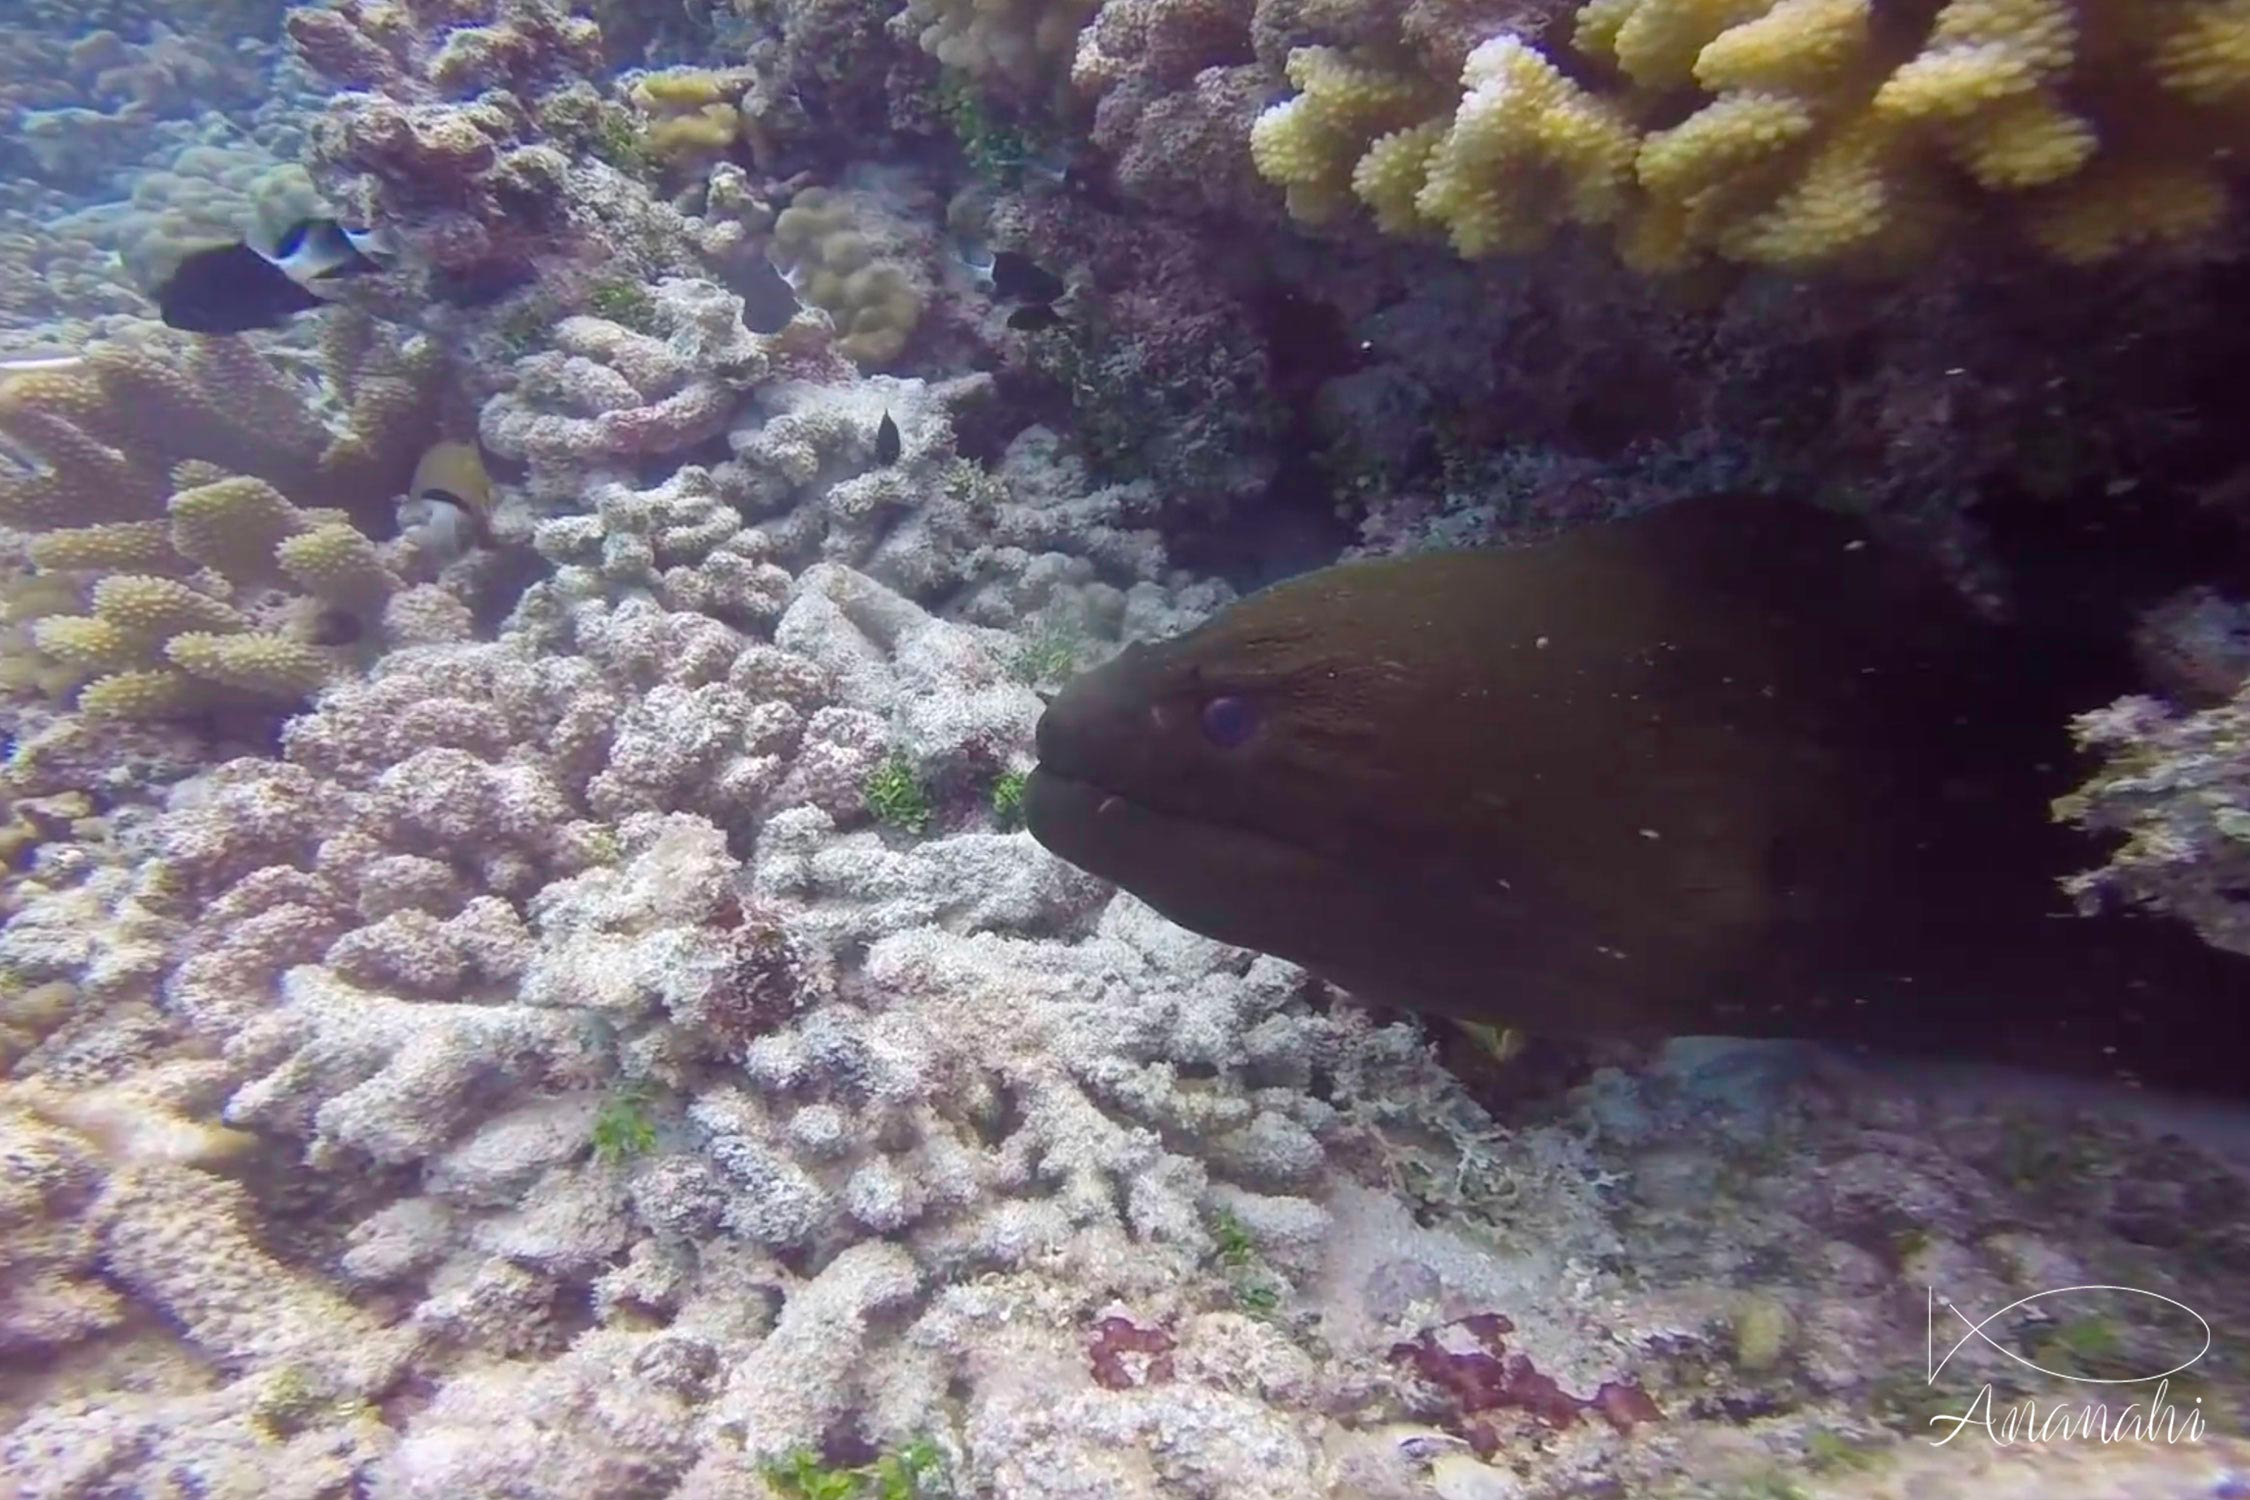 Giant moray of French polynesia